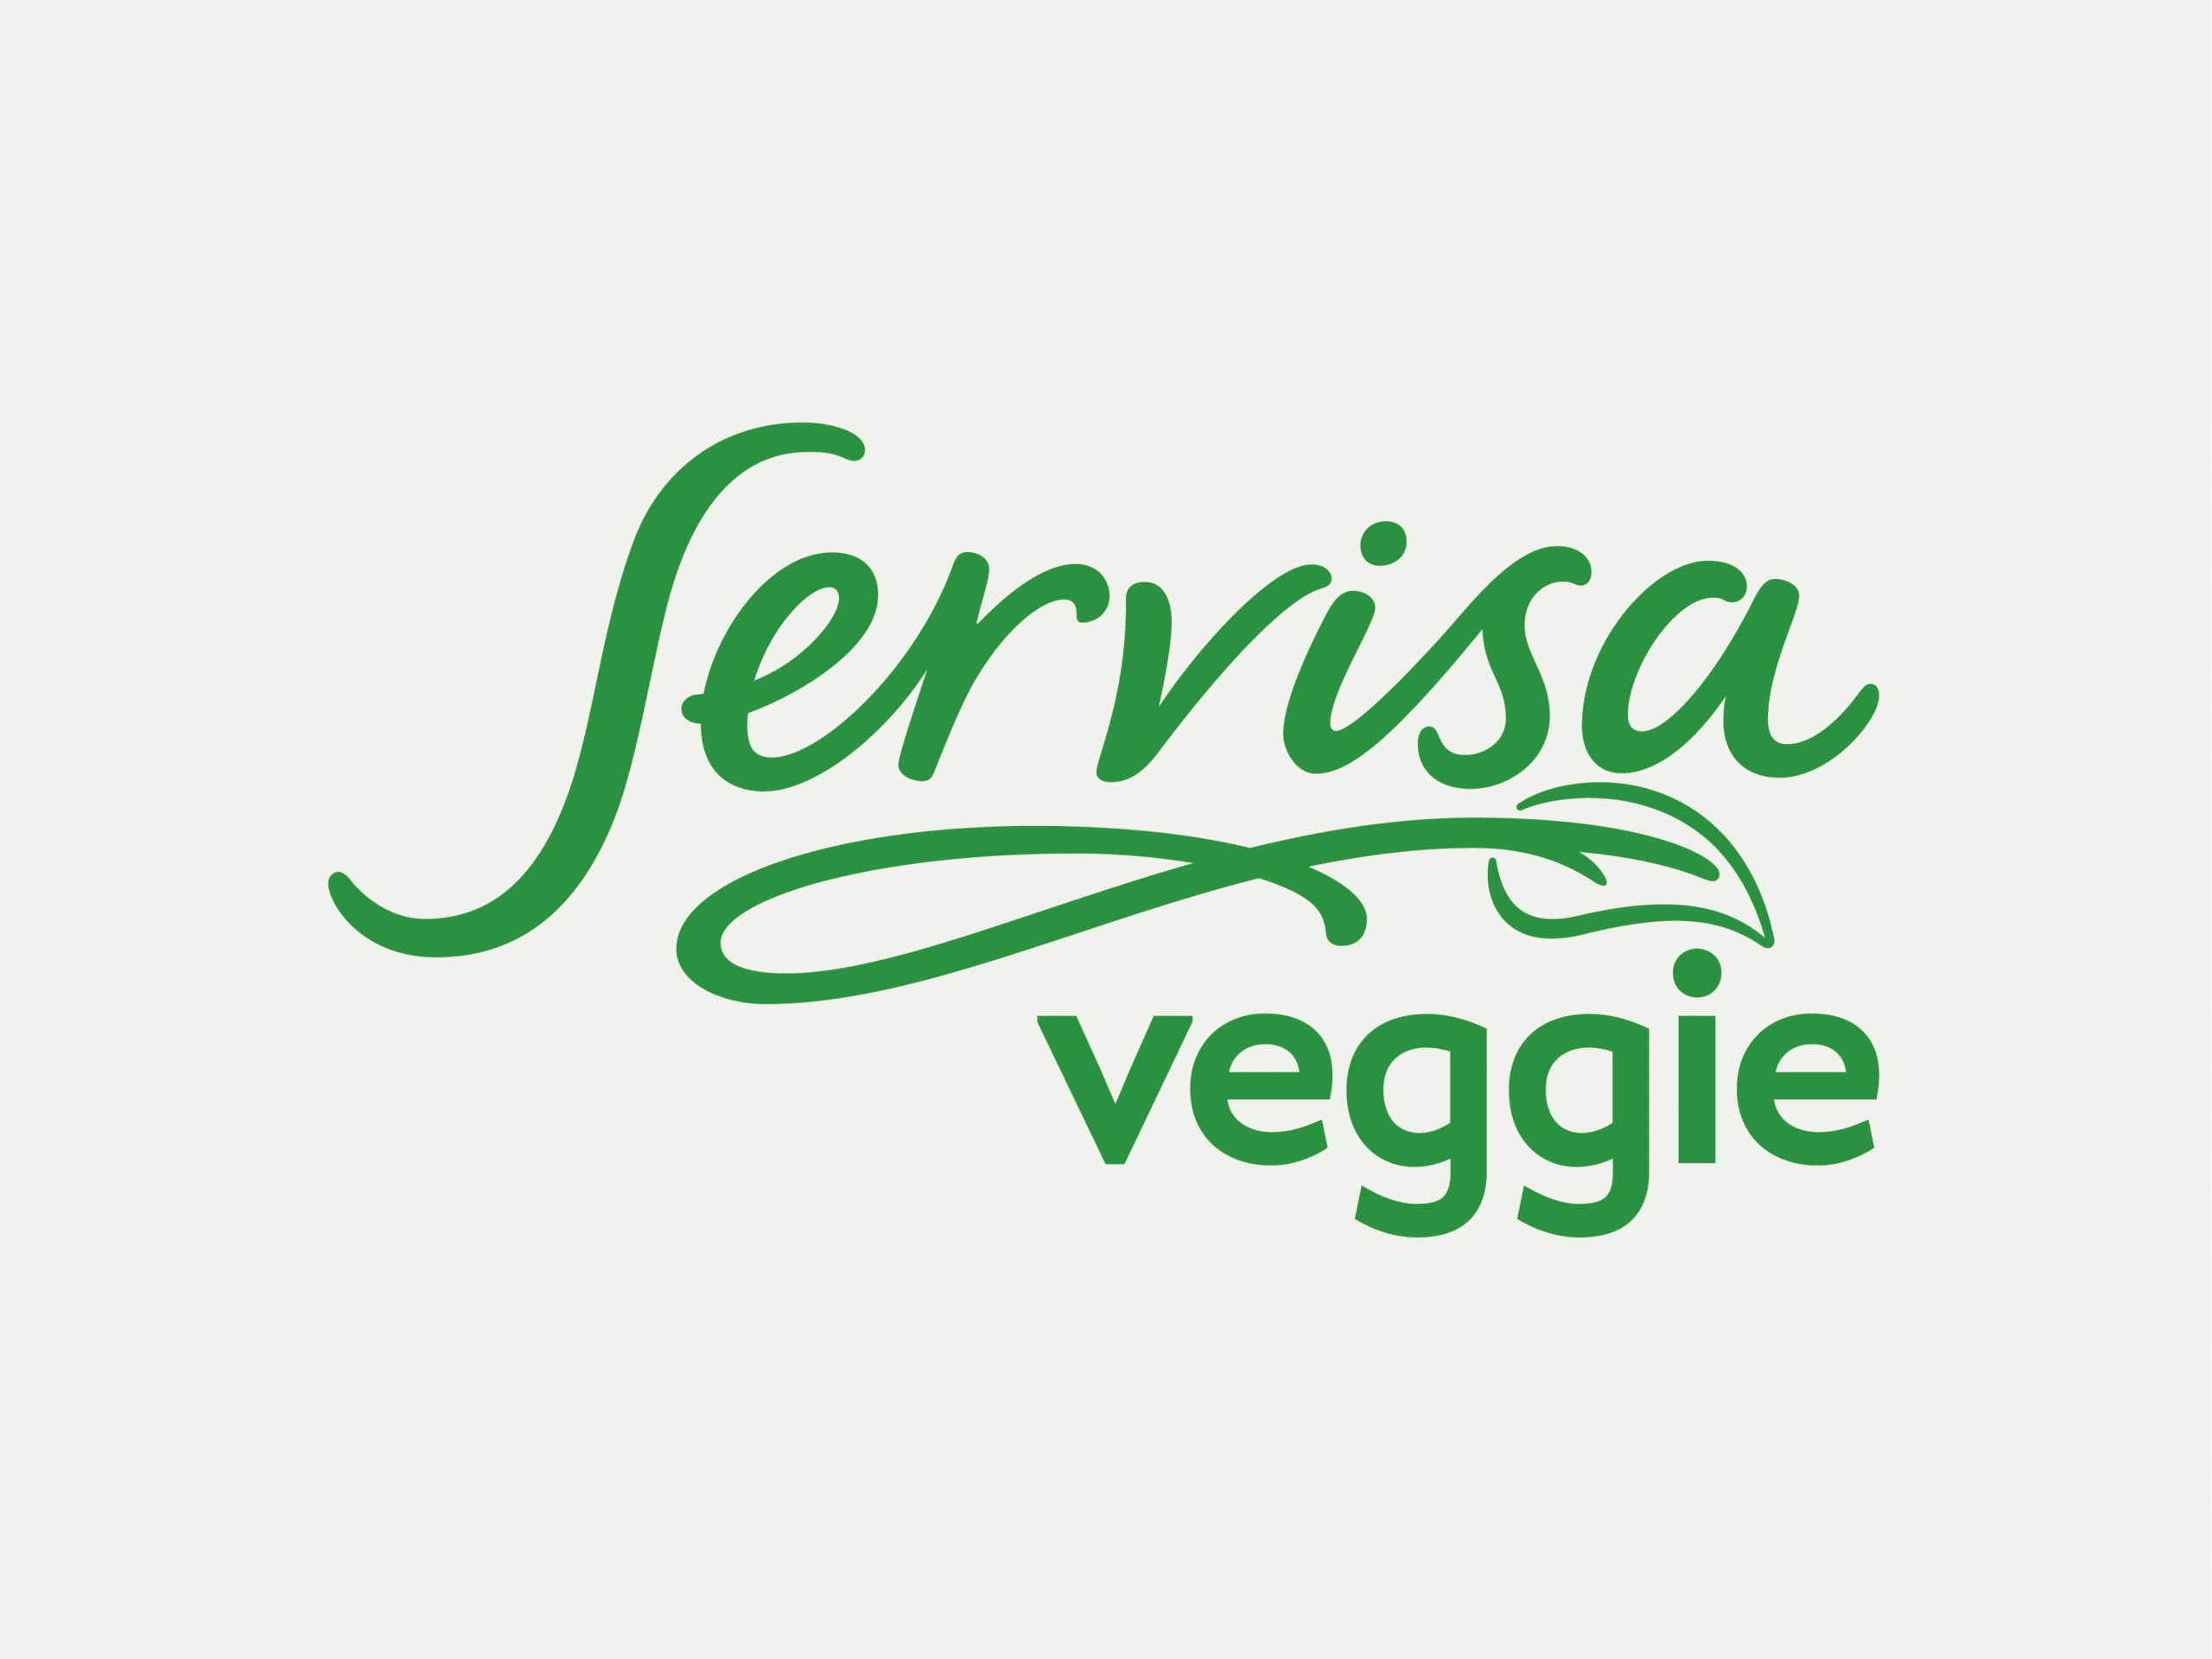 Mit Servisa Veggie durch den Veganuary